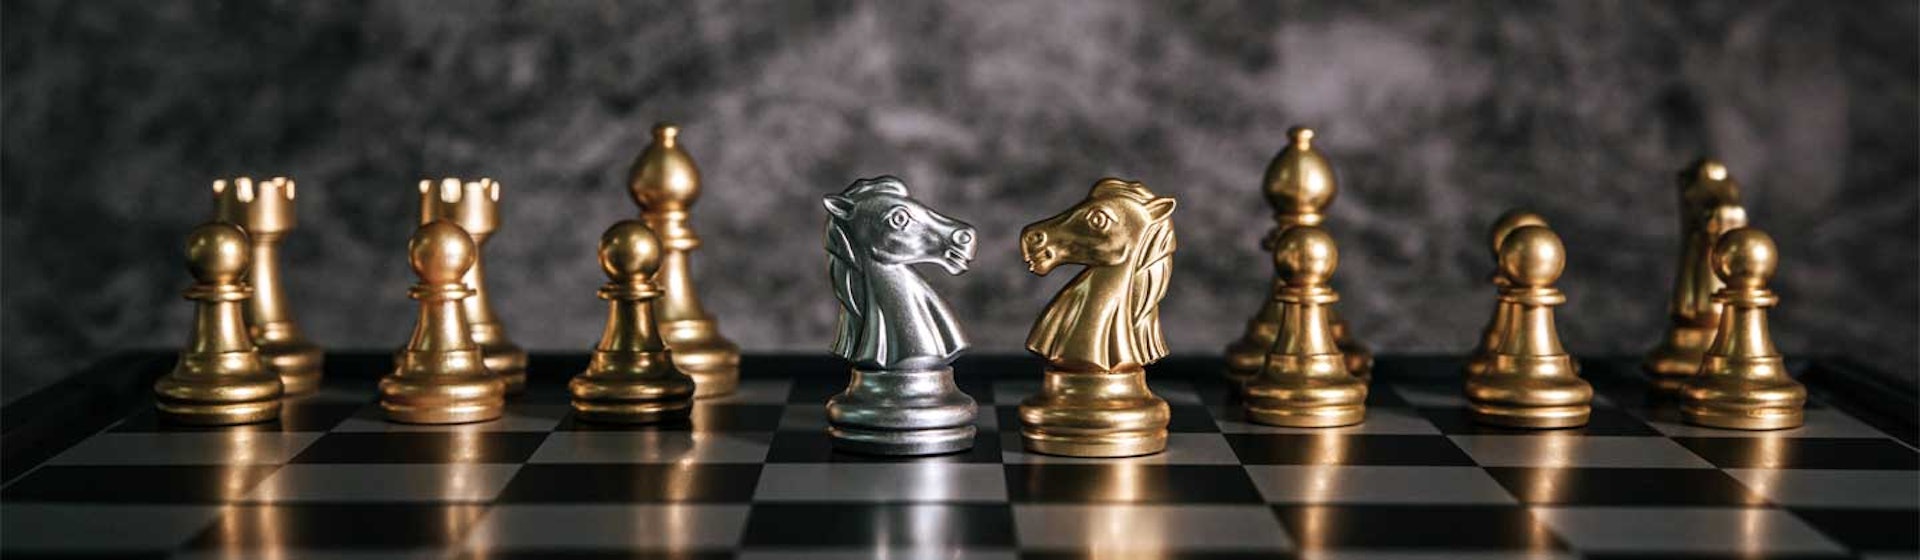 El caballo de ajedrez: ¡domina esta pieza del tablero al estilo de Beth Harmon!